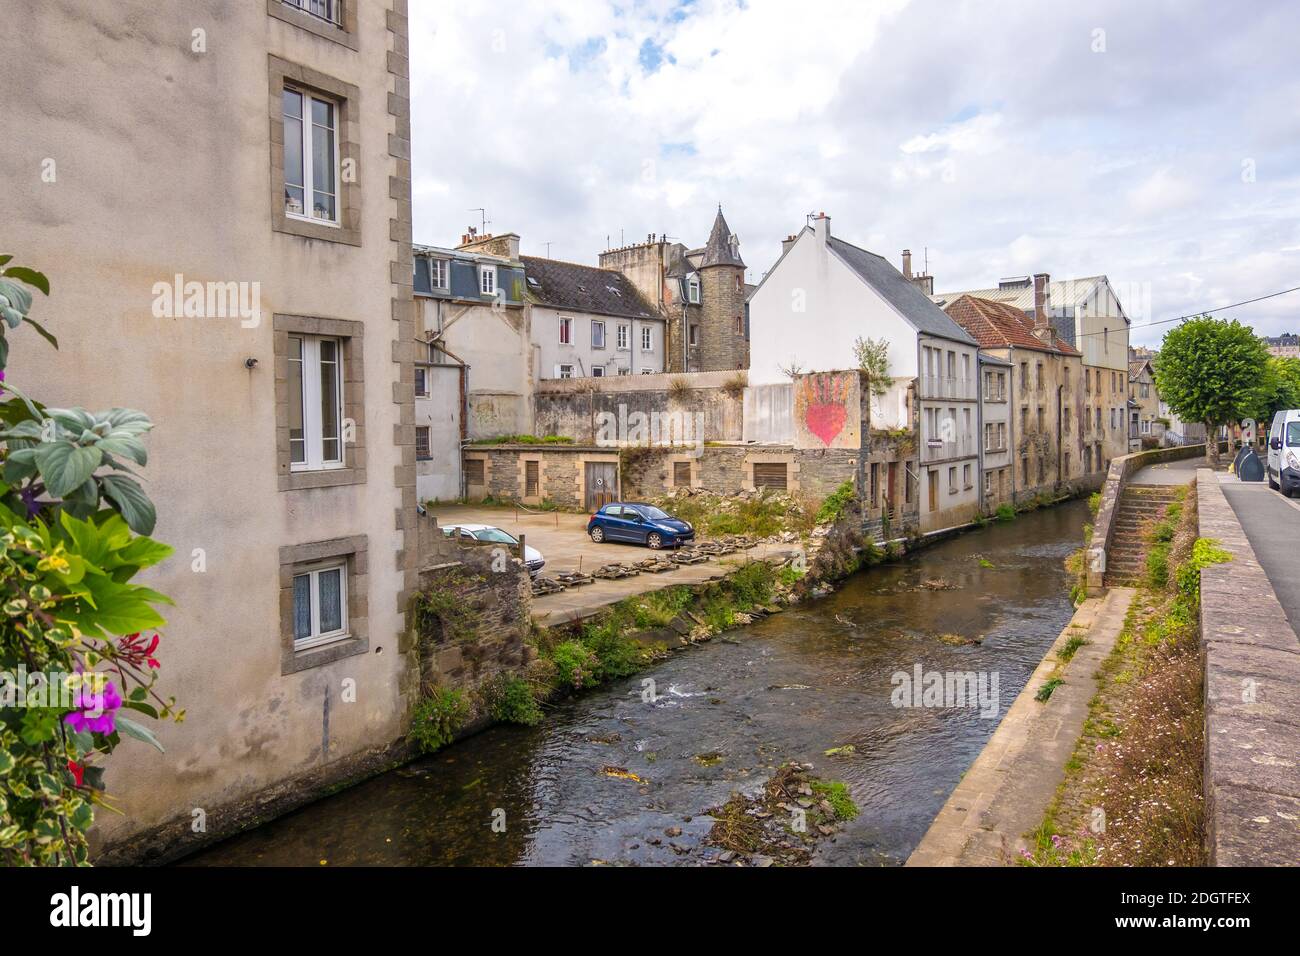 Morlaix, France - 28 août 2019 : vue sur une rue étroite du centre historique de Morlaix, département de Finistère, Bretagne, France Banque D'Images